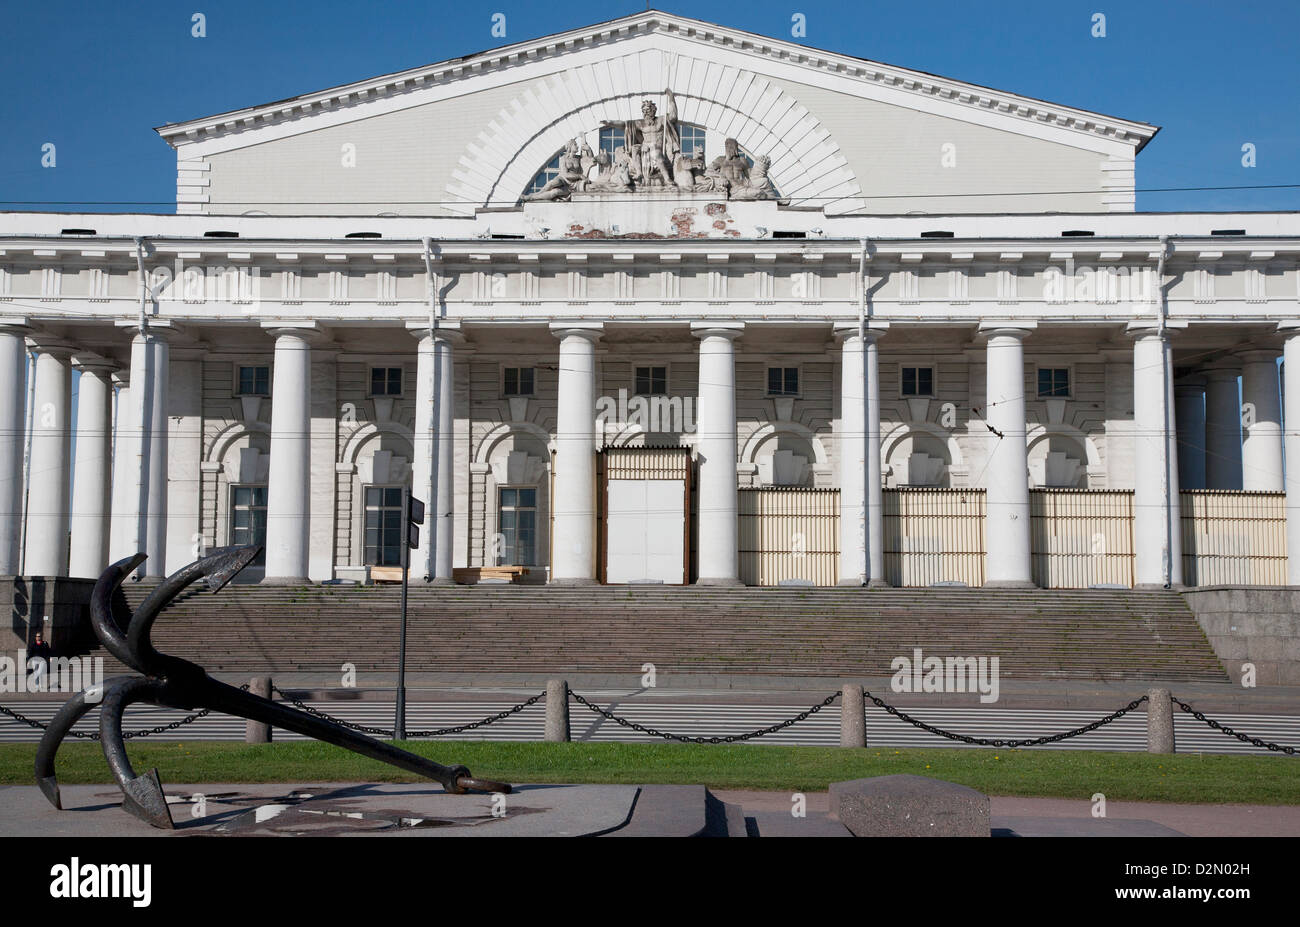 Vieille Bourse, Saint-Pétersbourg, Russie, Europe Banque D'Images